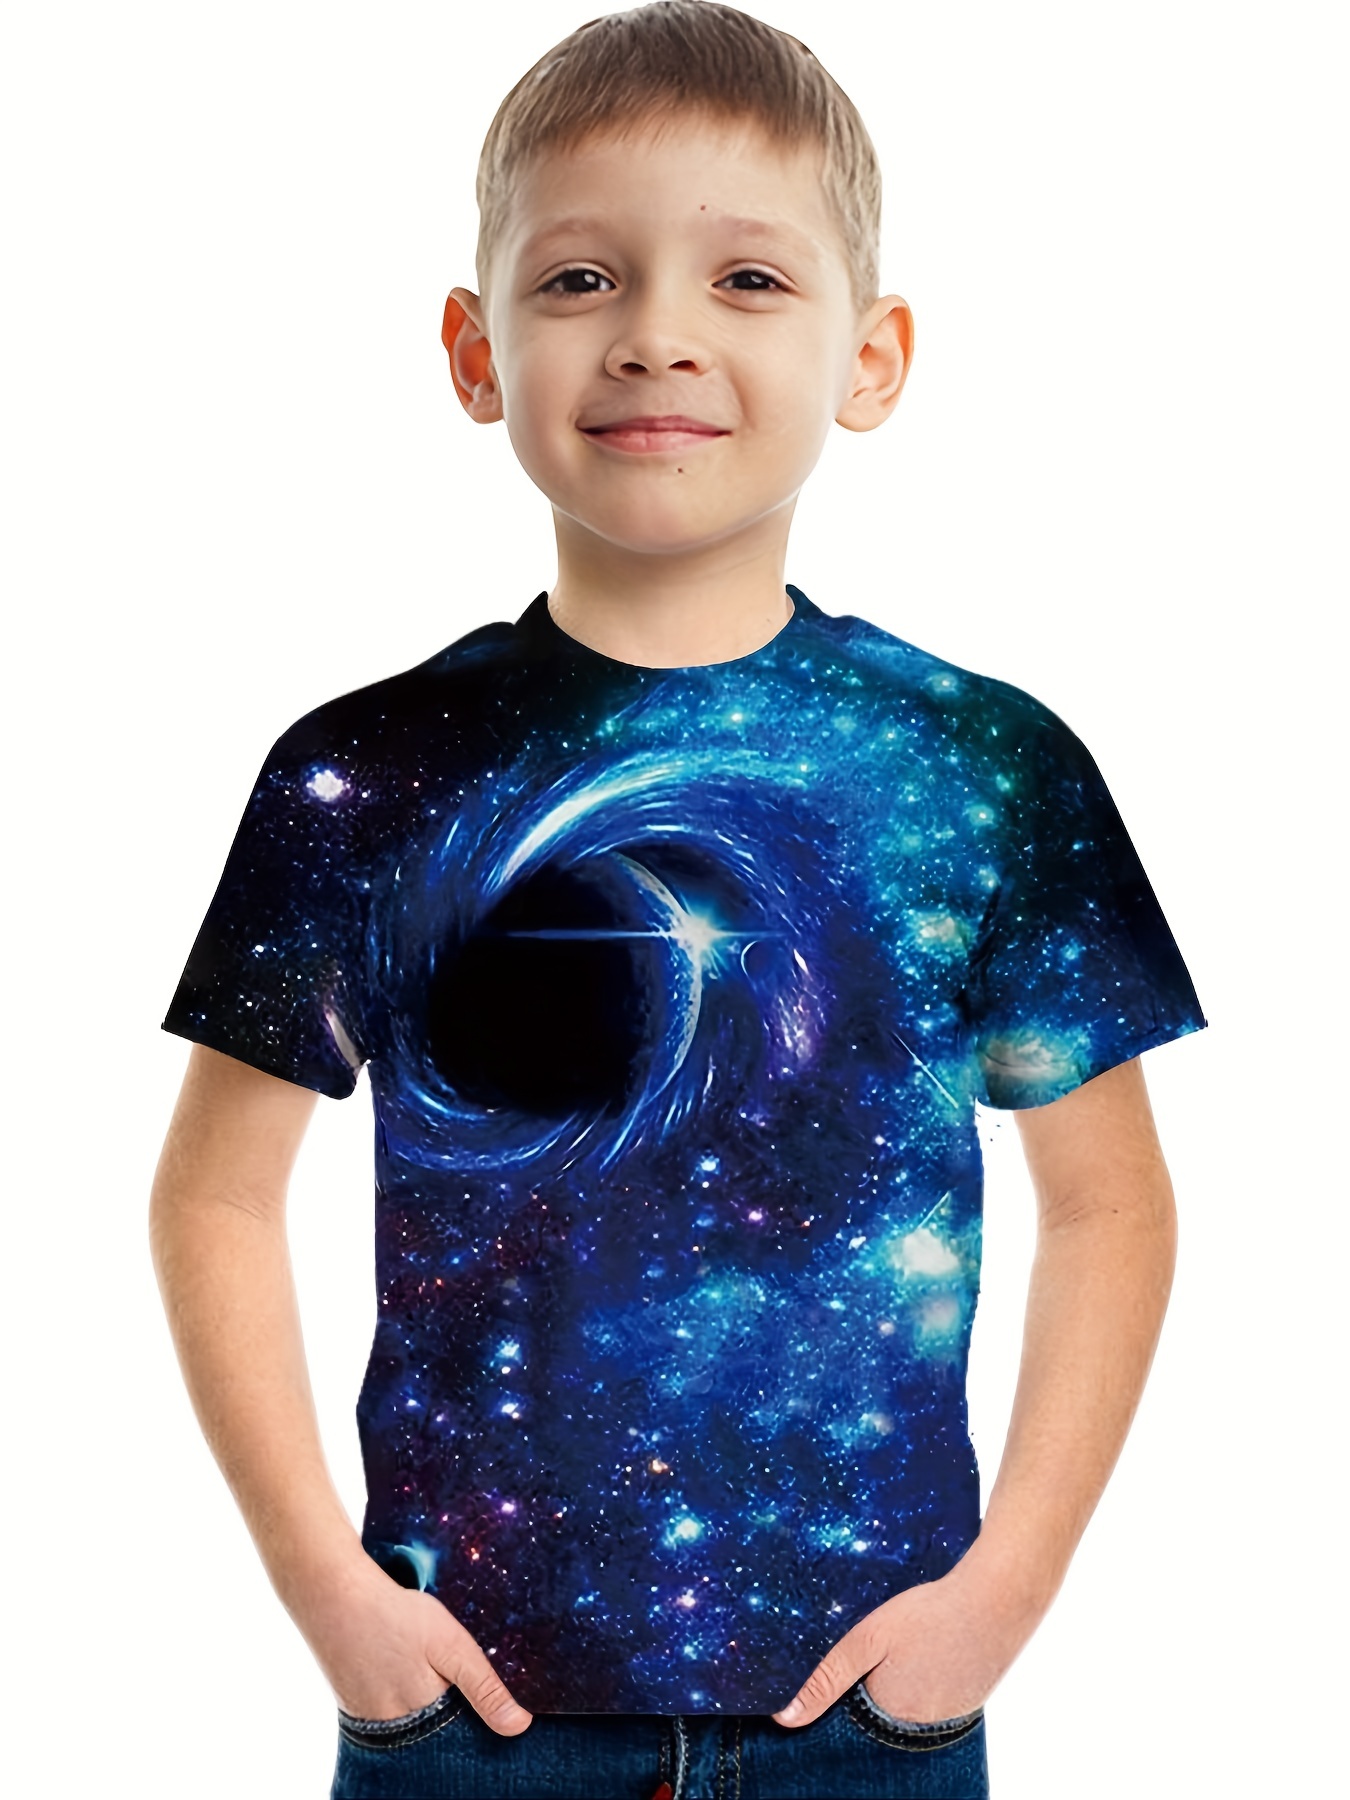 Starry Boy Shirt